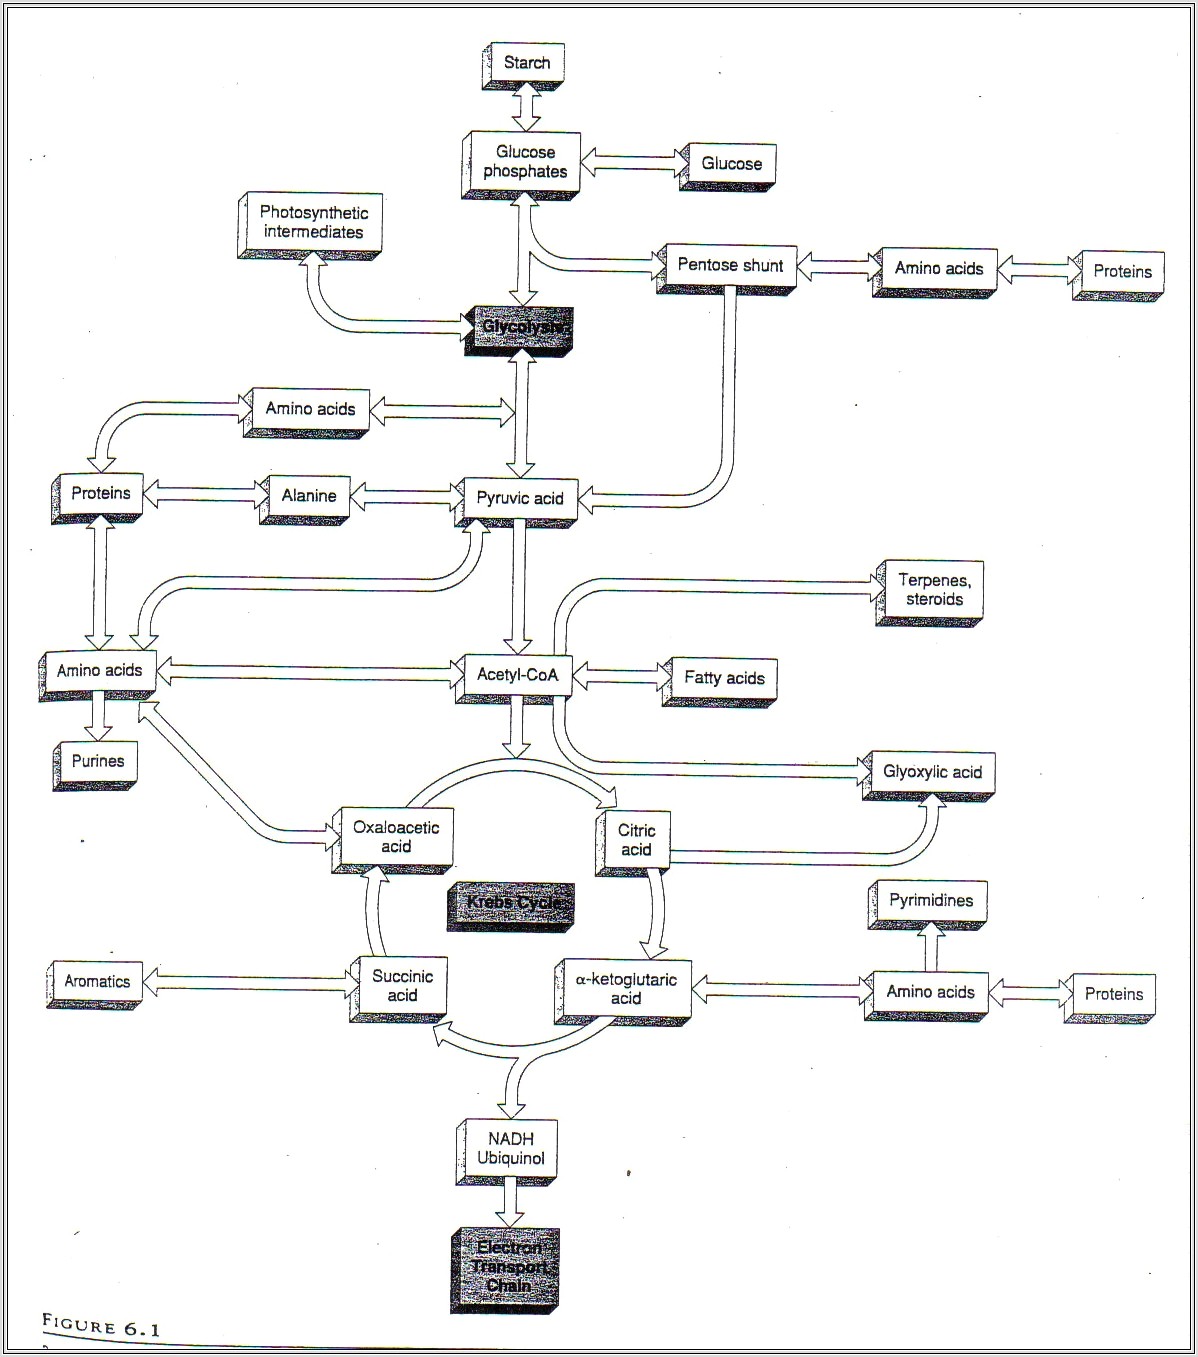 Krebs Cycle Diagram Worksheet